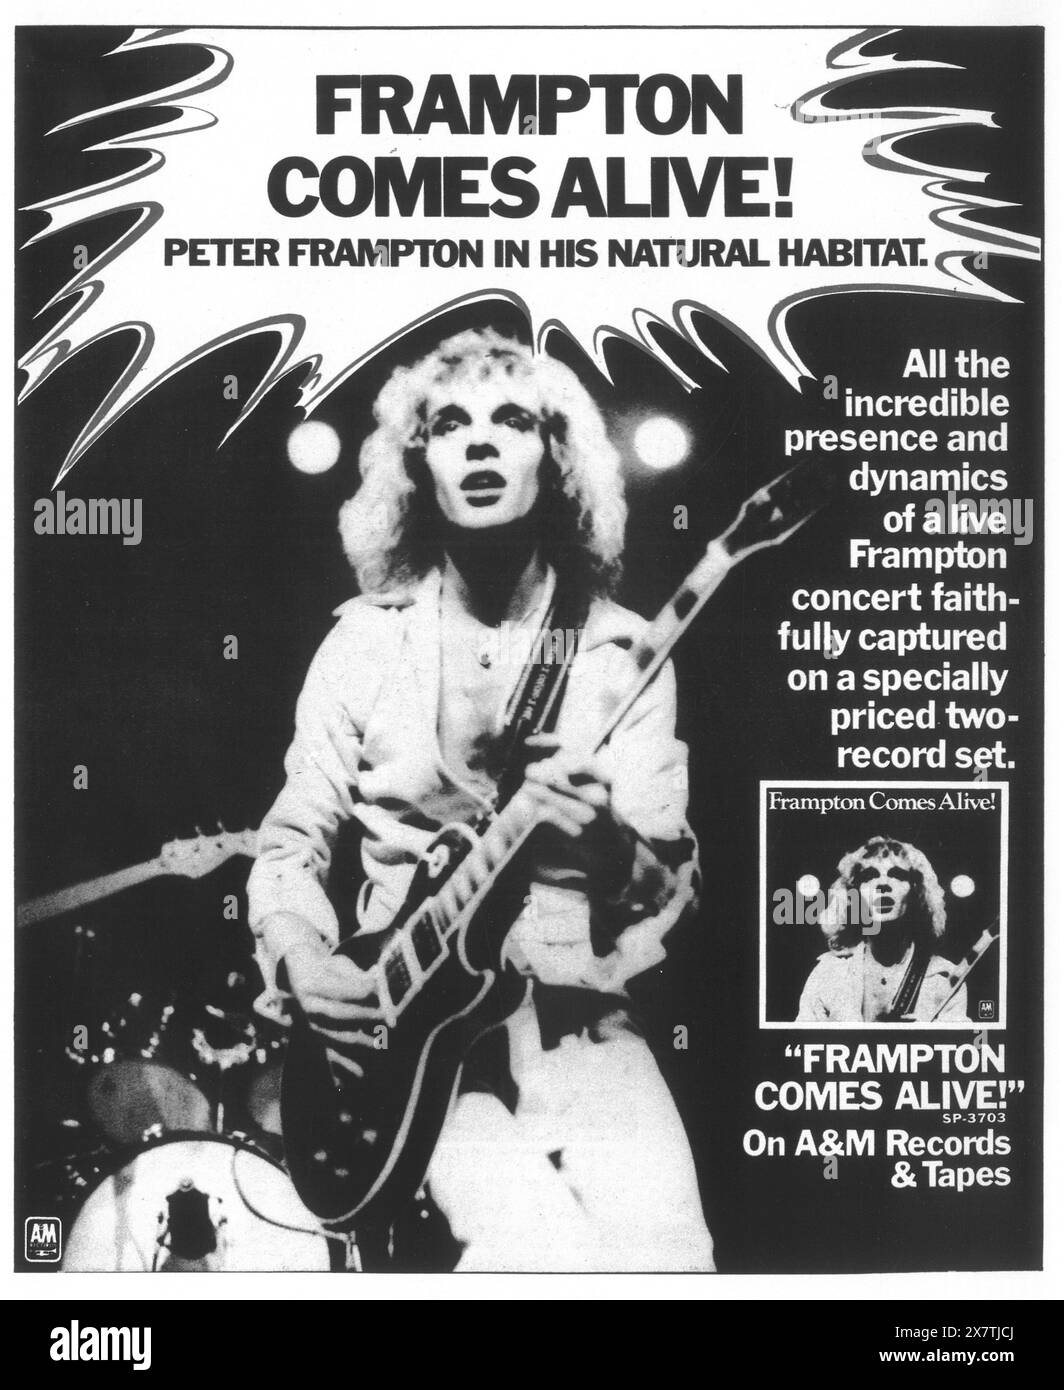 1976 Frampton prende vita! Promo - doppio album dal vivo del musicista e cantautore inglese Peter Frampton Foto Stock